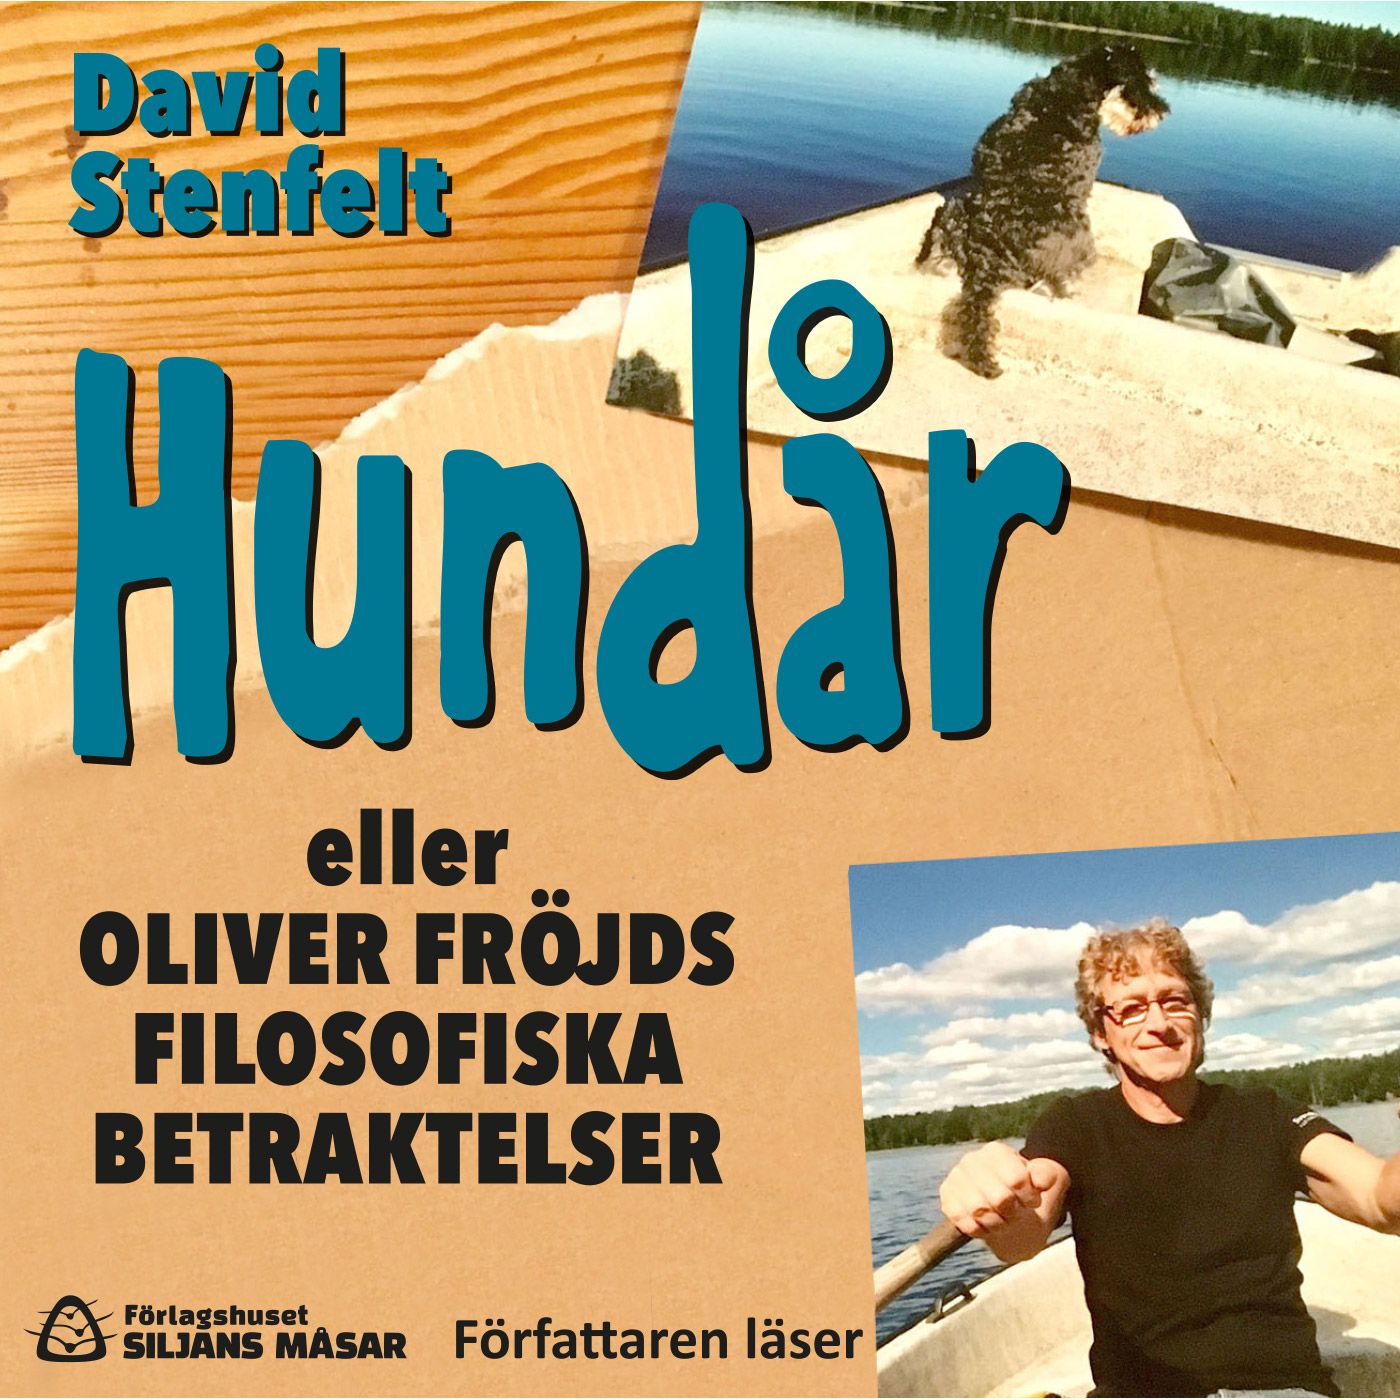 Hundår eller Oliver Fröjds filosofiska betraktelser, audiobook by David Stenfelt